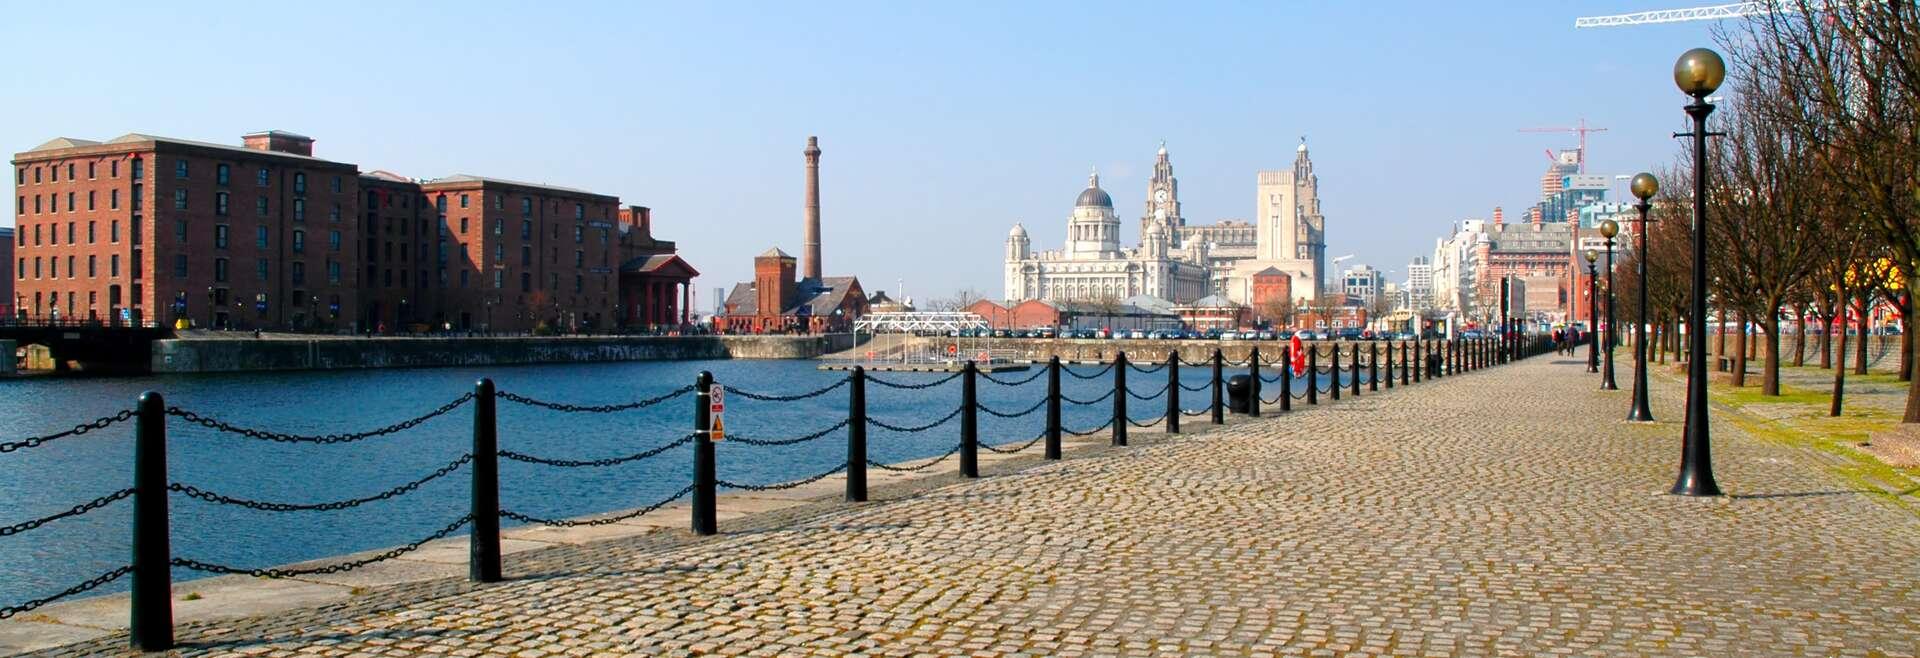 Sprachaufenthalt England, Liverpool - Promenade